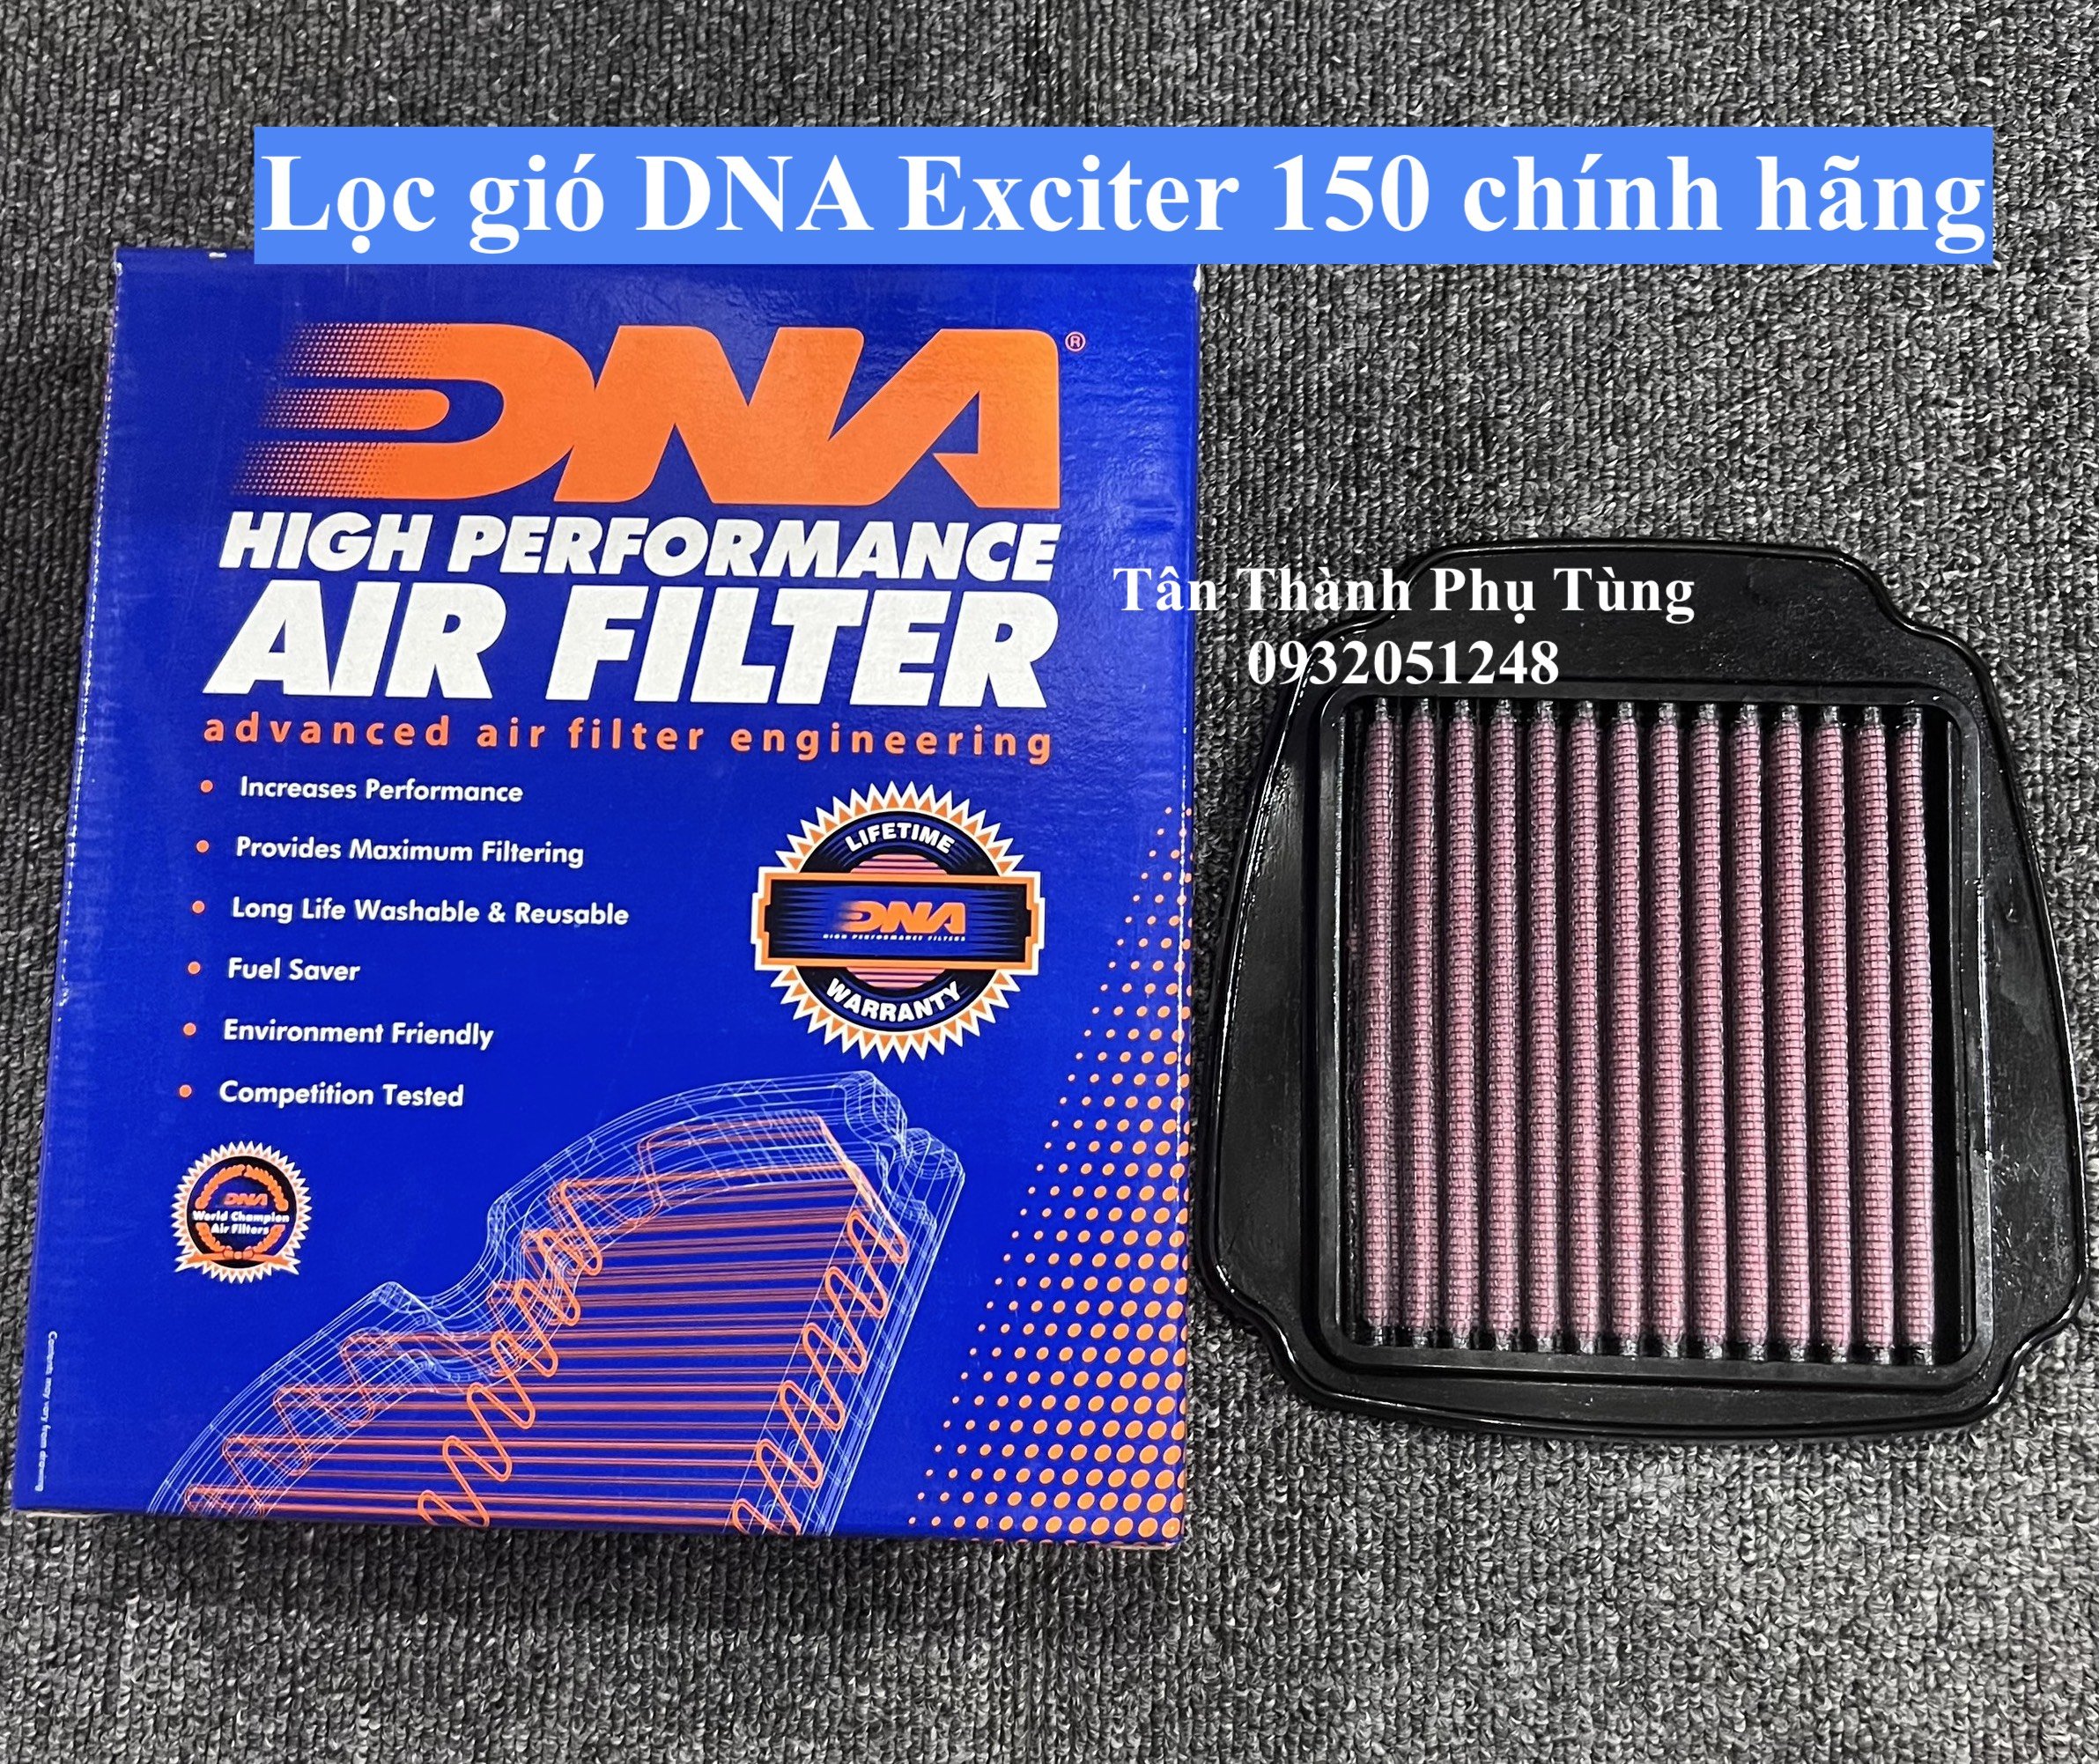 Lọc gió DNA Exciter 150 chính hãng